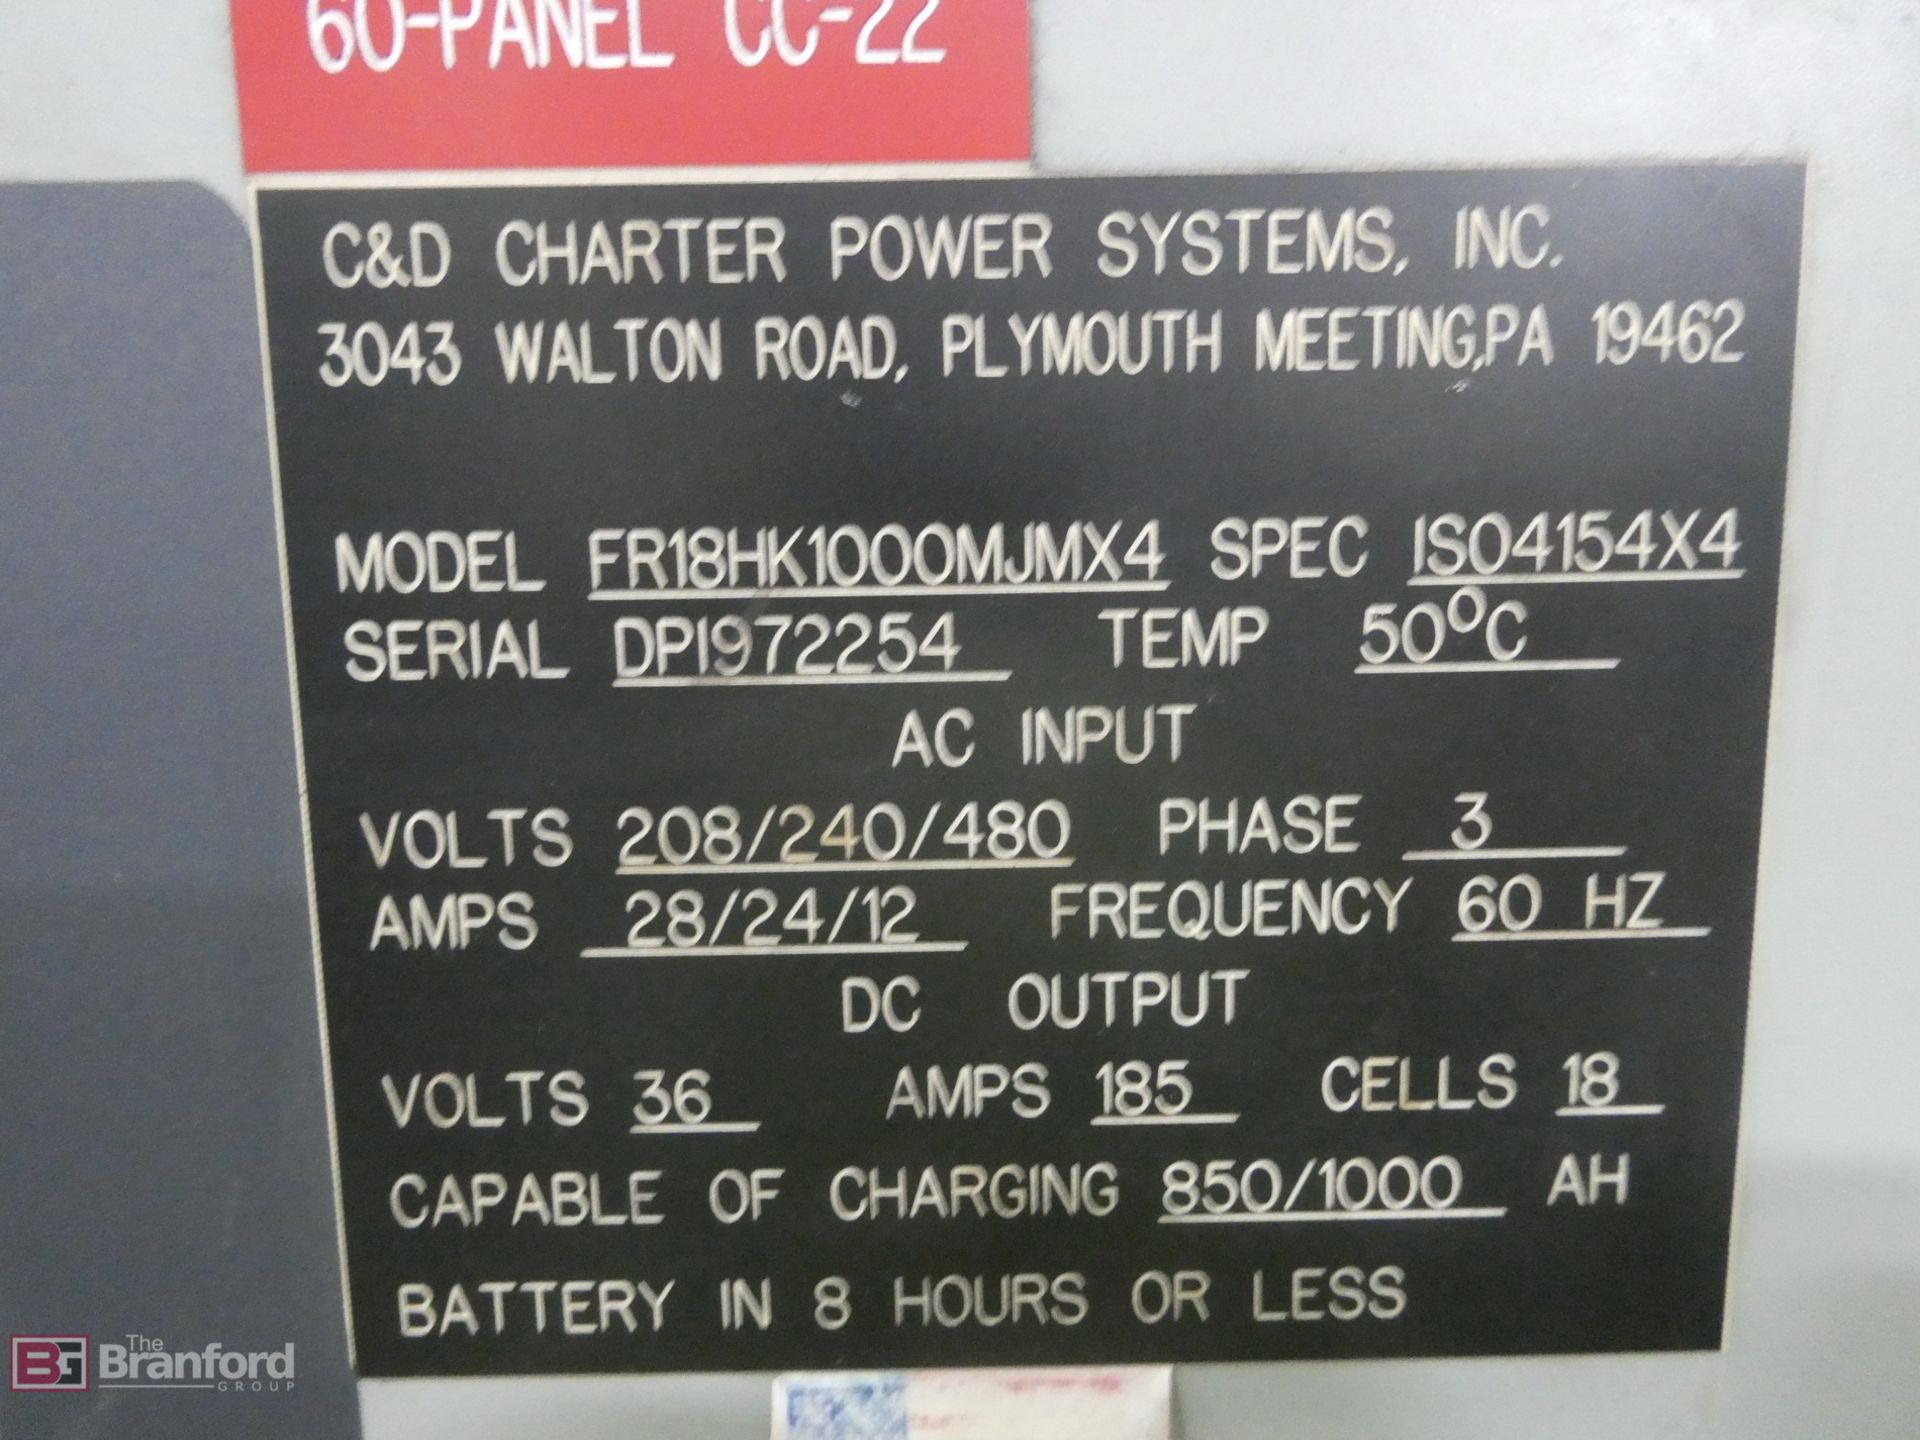 CD Model FR158K1000MJMX4, Ferro Five 36V Battery Charger - Image 2 of 2